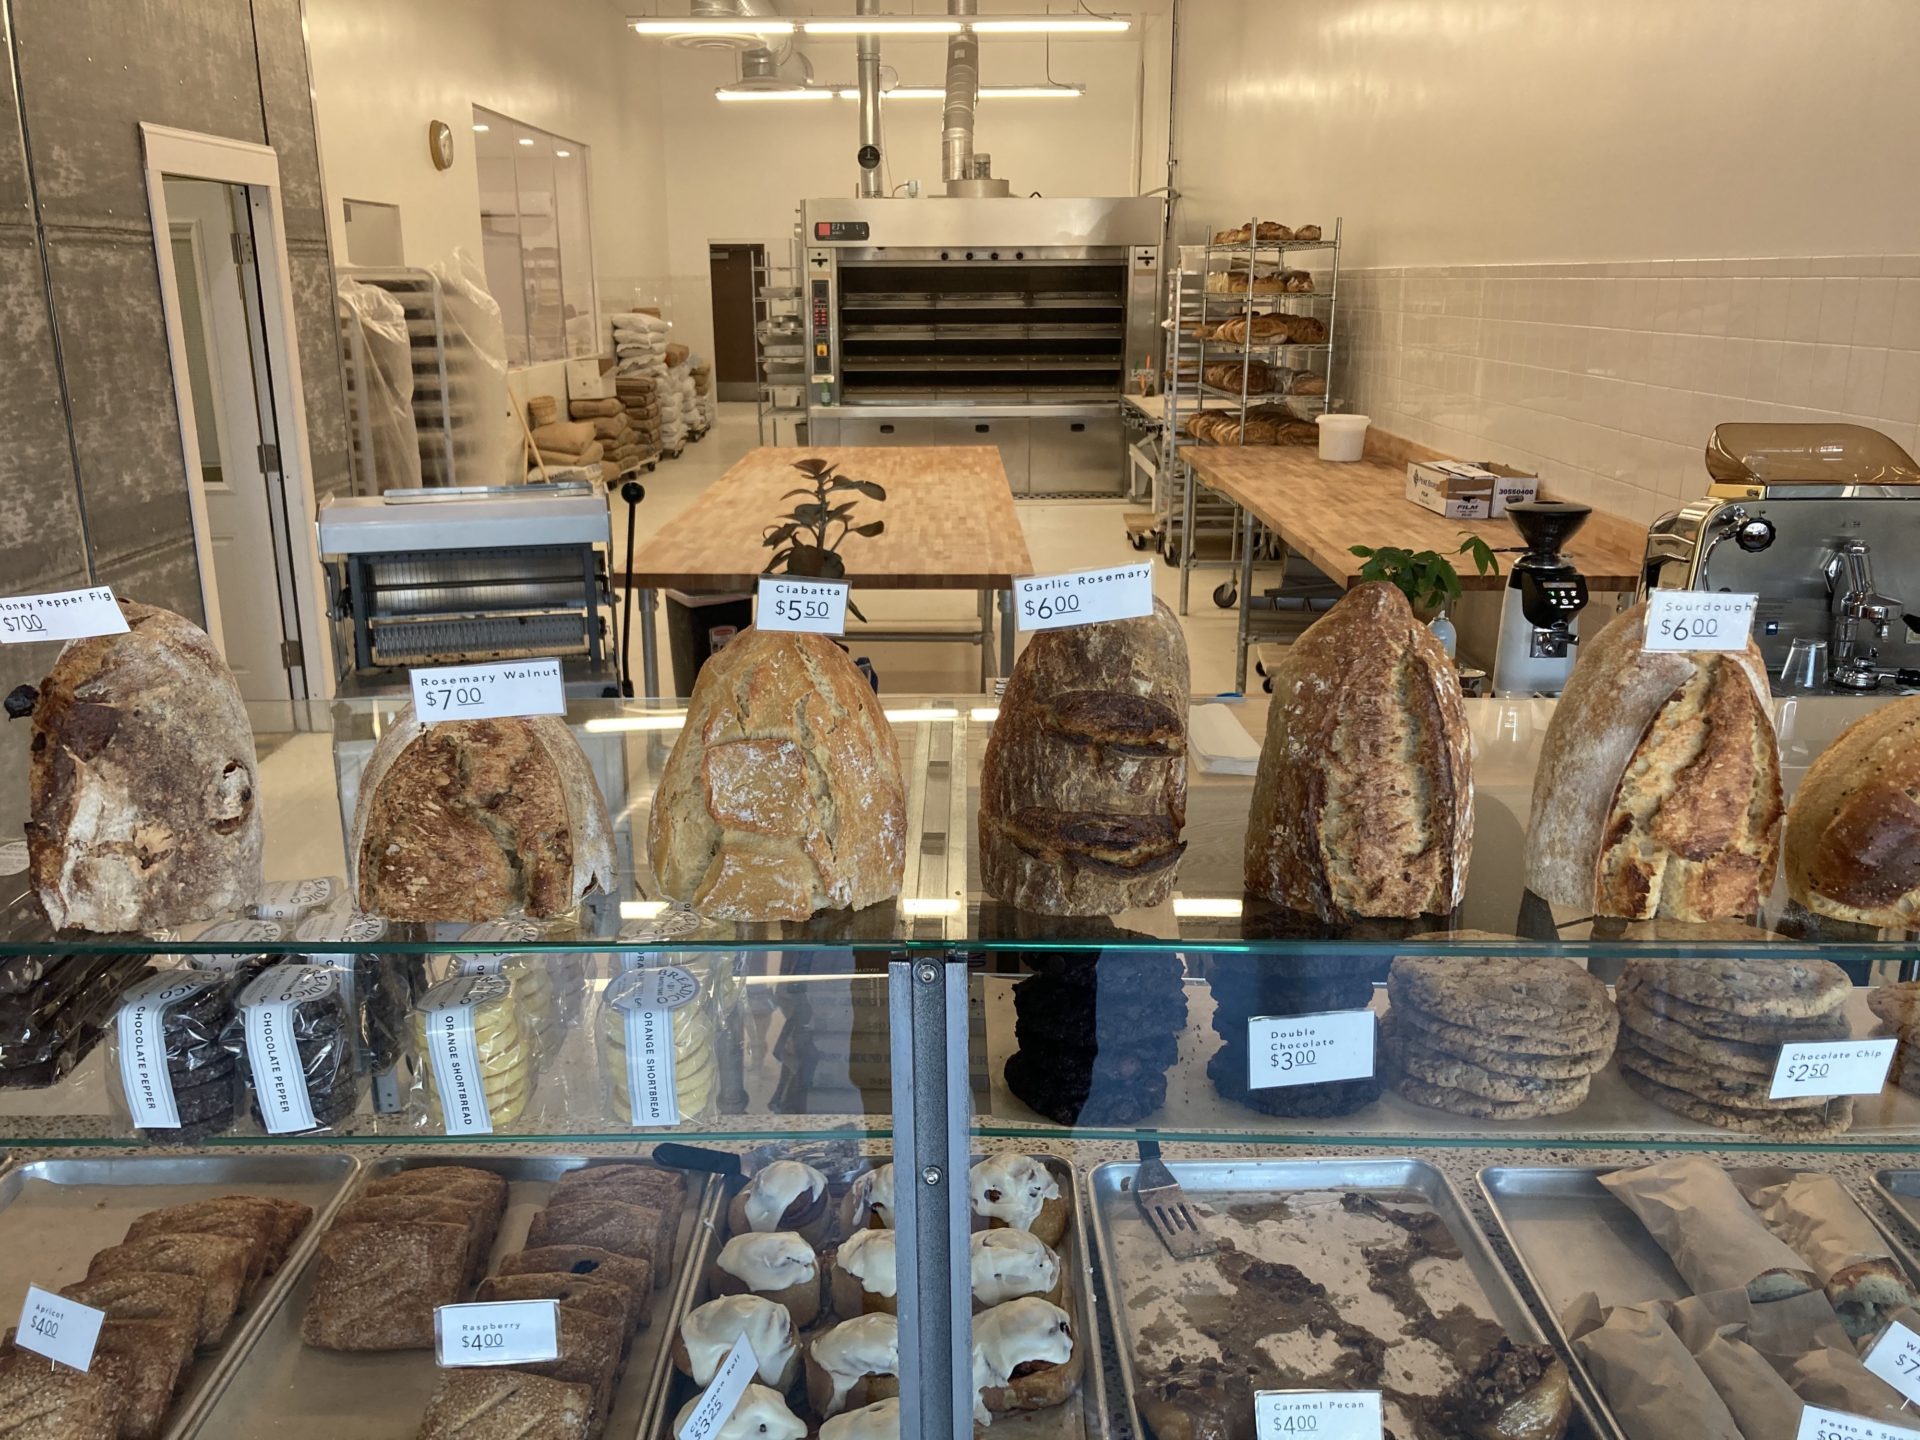 Breadico bread counter